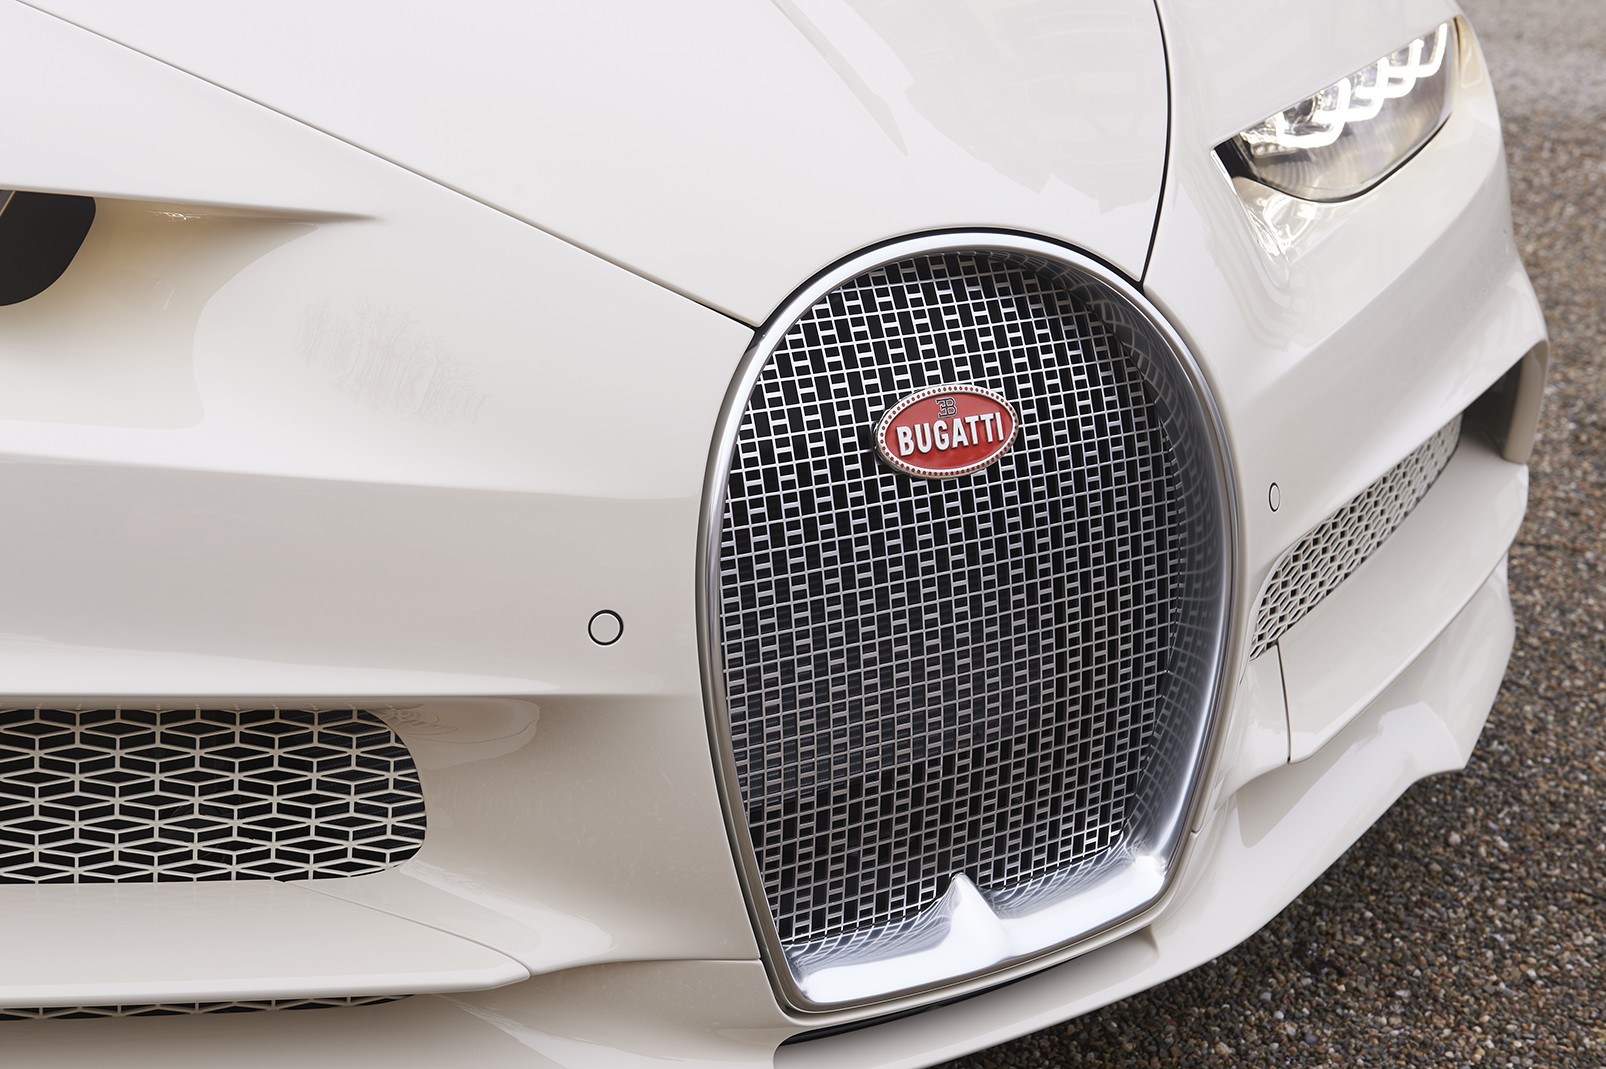 Manny Khoshbin's Bugatti Chiron Hermes Shows Amazing All-Cream Spec -  autoevolution